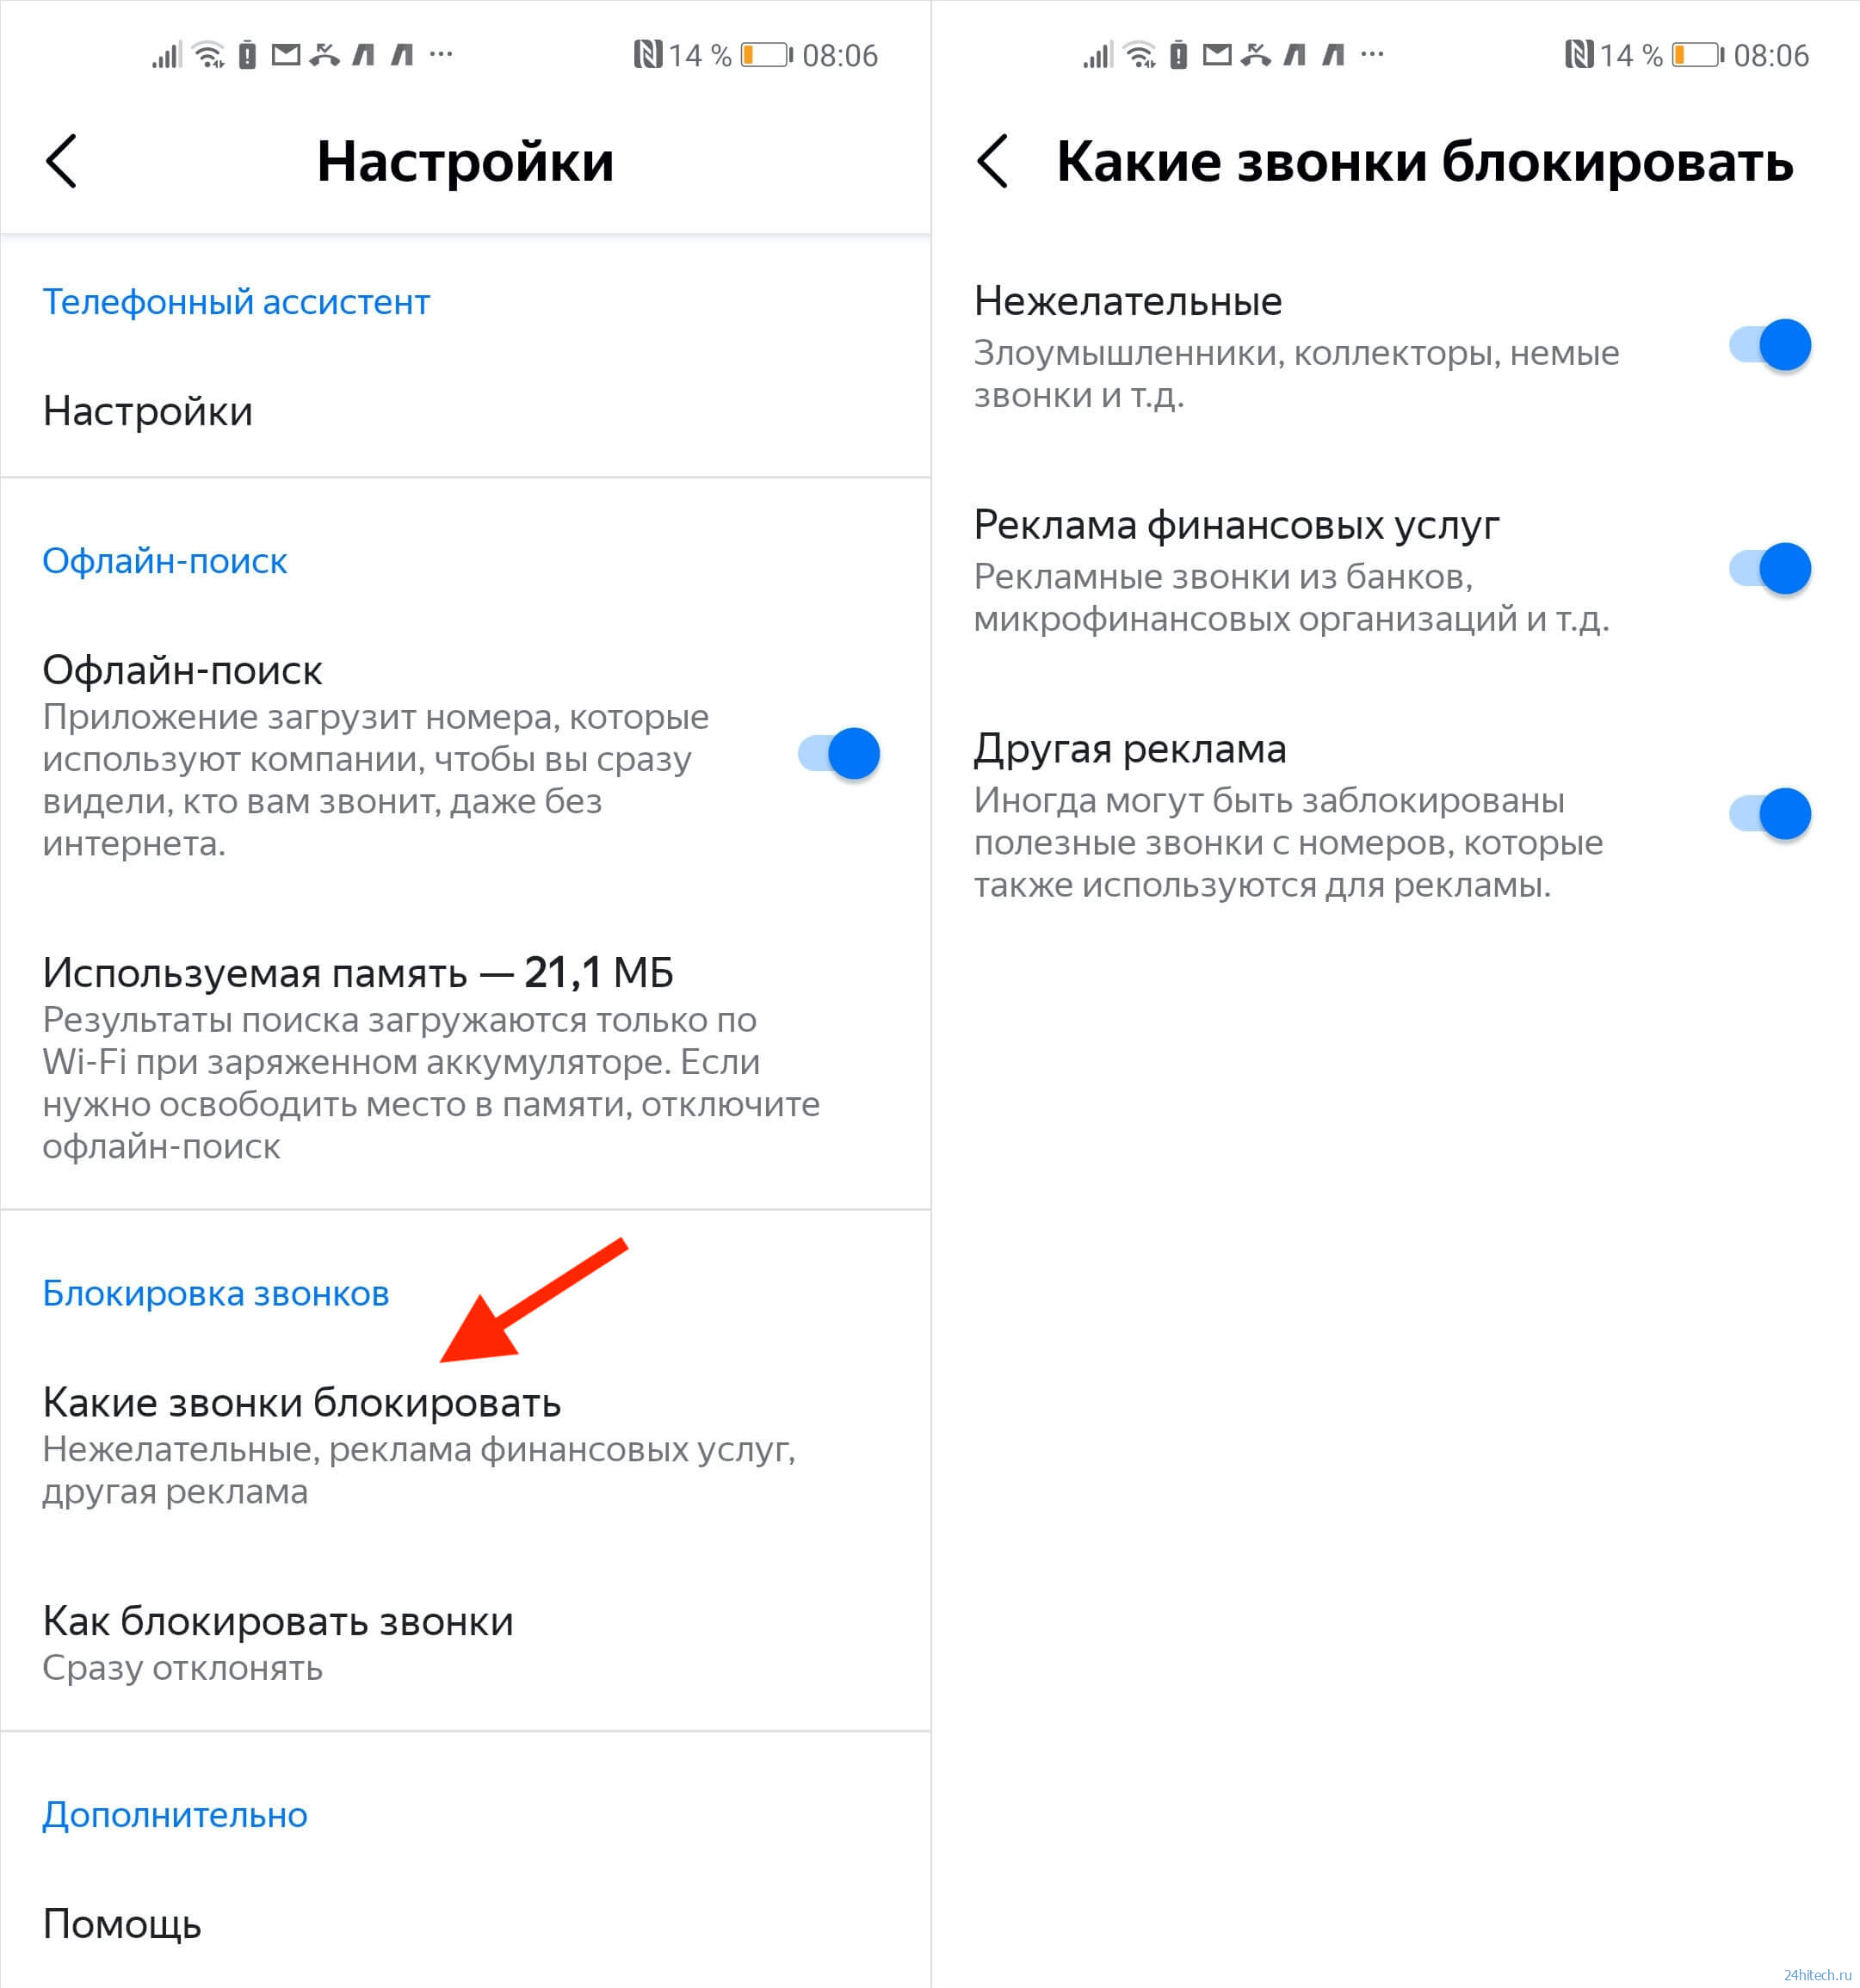 Как сделать Яндекс Алису автоответчиком на Андроид